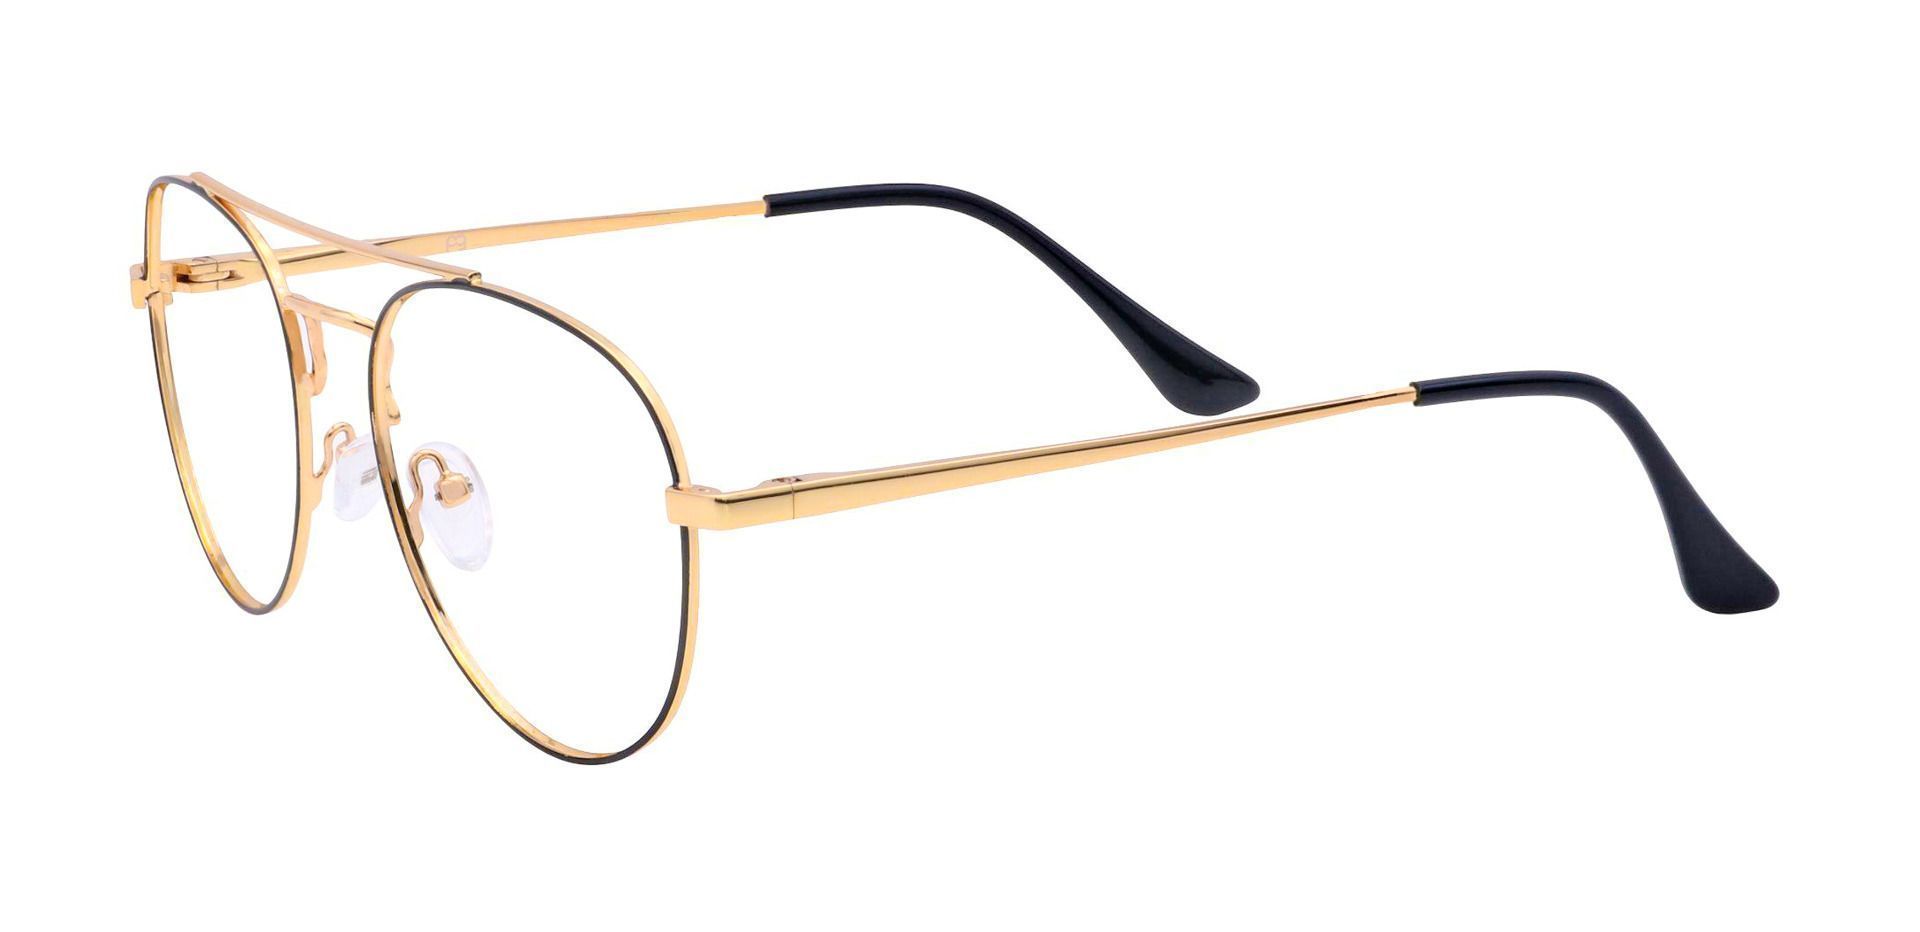 Trapp Aviator Non-Rx Glasses - Gold